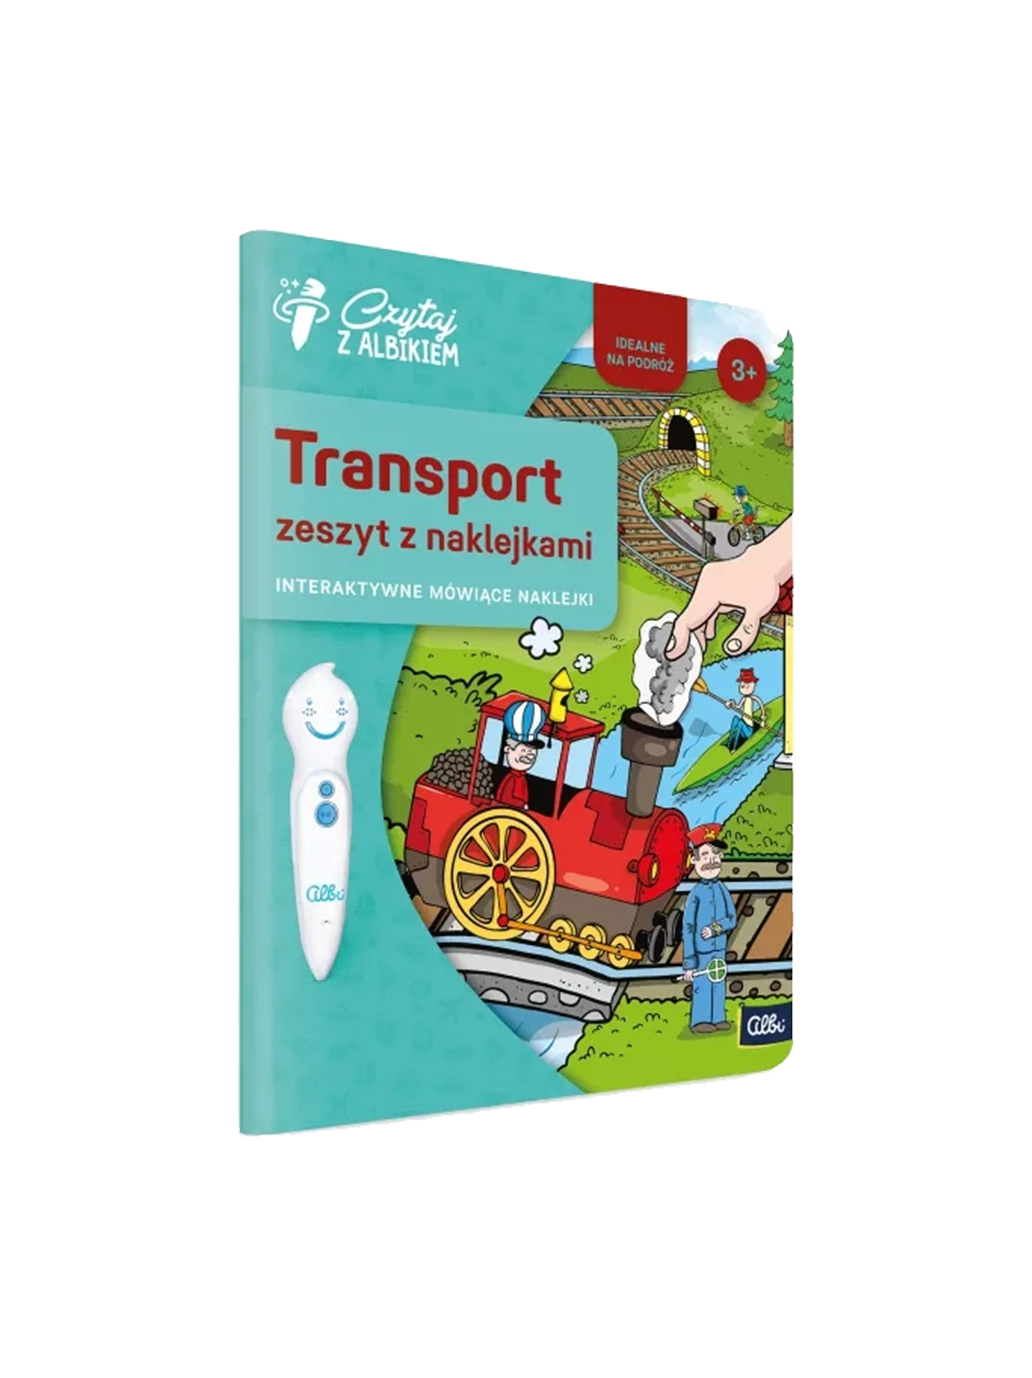 Zeszyt z naklejkami: Transports